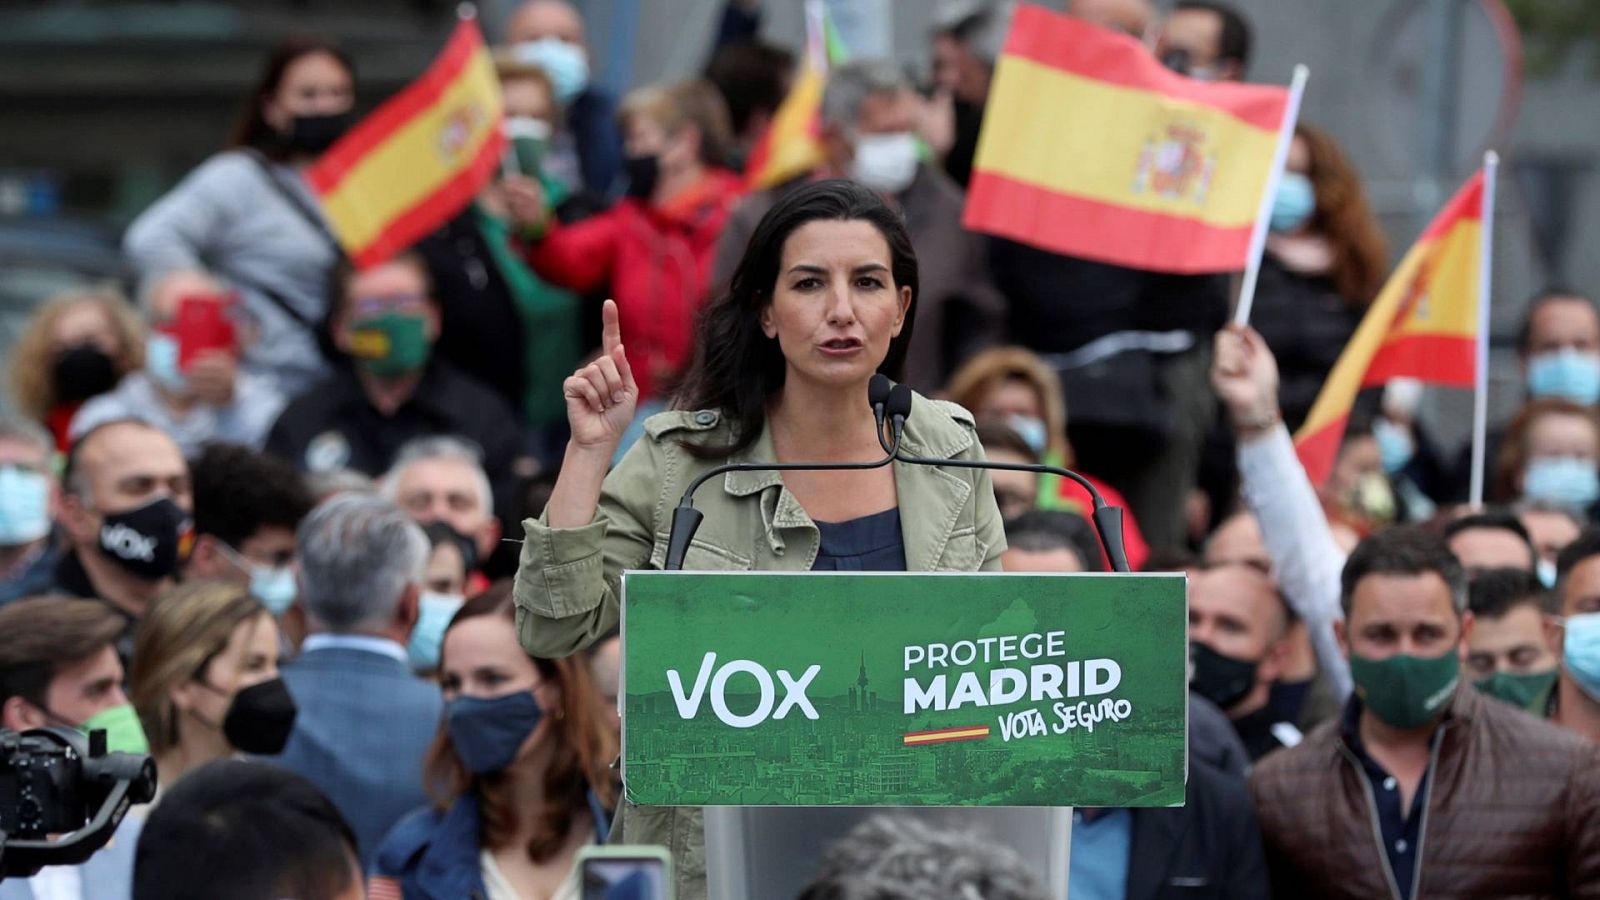 La candidata de Vox, Rocío Monasterio, durante un acto de campaña en Fuenlabrada